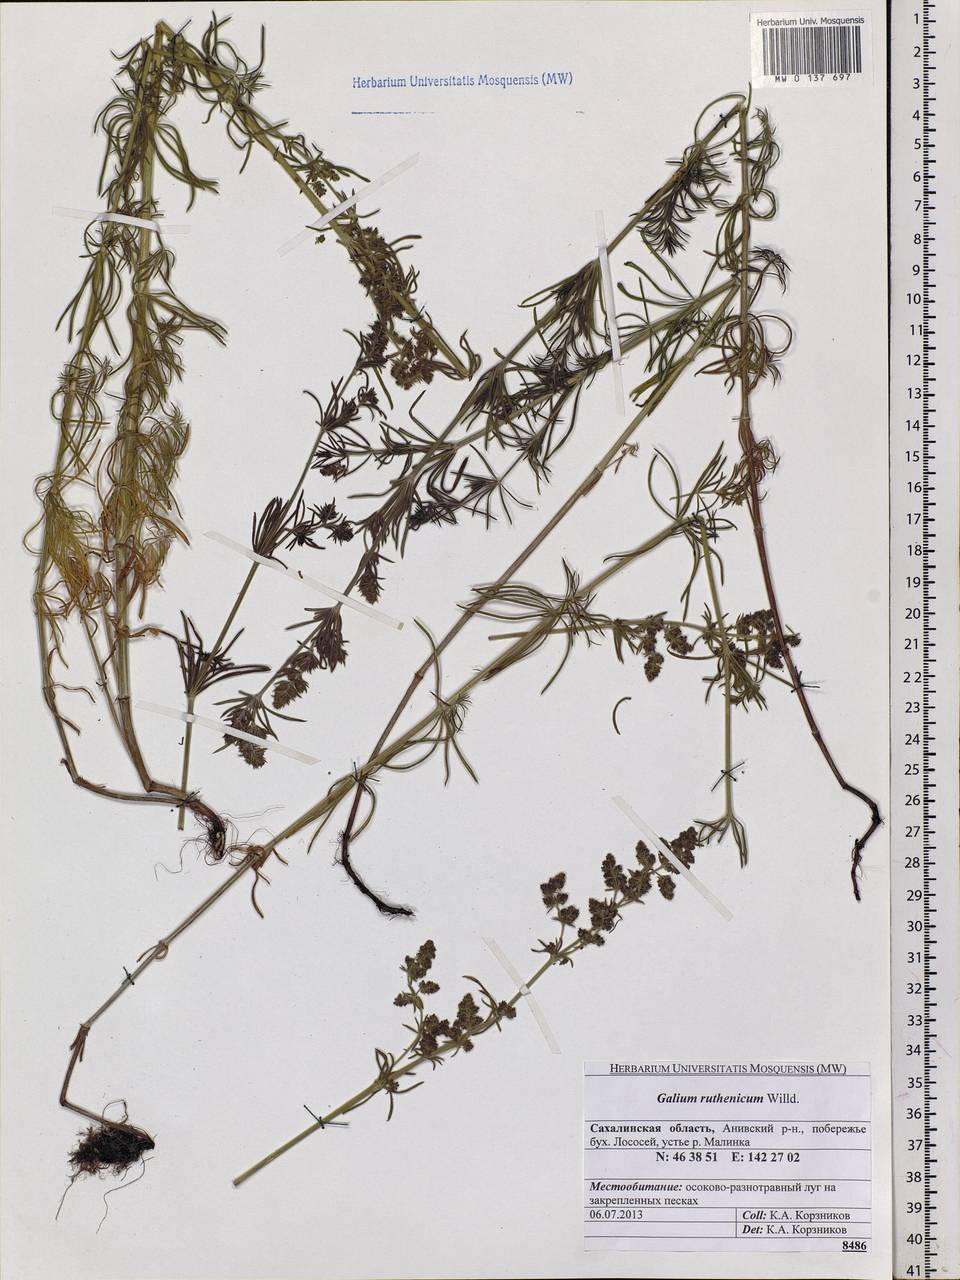 Galium verum subsp. verum, Siberia, Russian Far East (S6) (Russia)